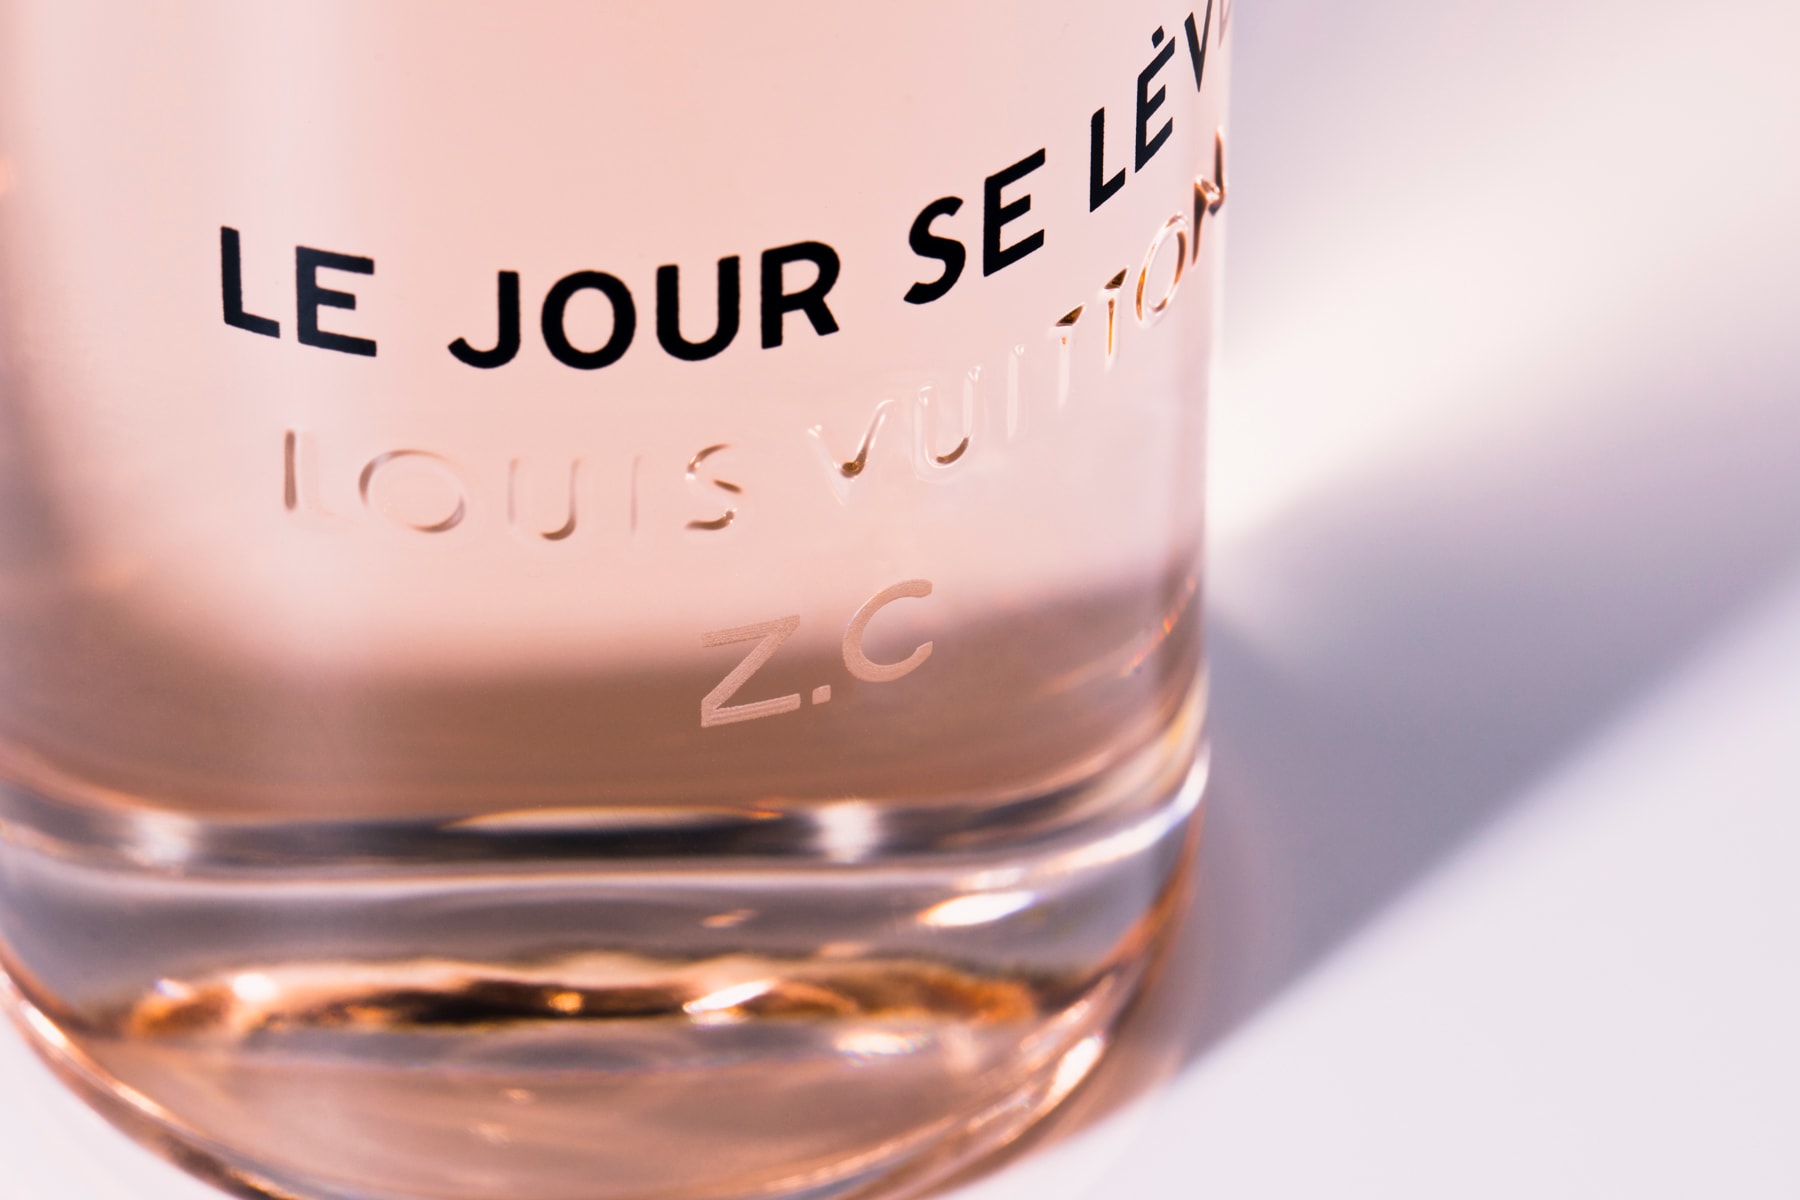 louis vuitton le jour se leve perfume fragrance scent custom bottle review Jacques Cavallier Belletrud